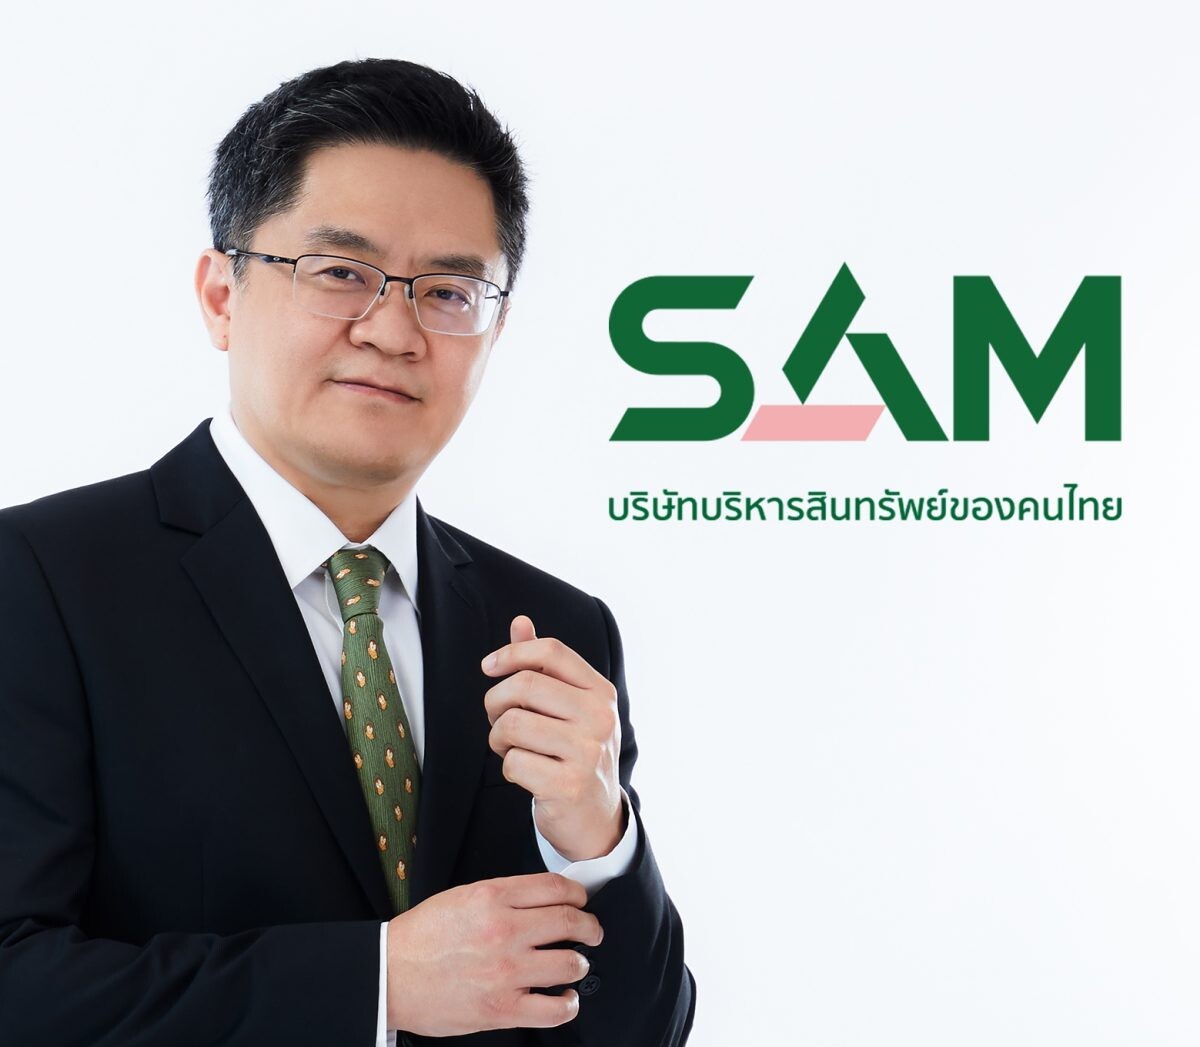 SAM บริษัทบริหารสินทรัพย์ของคนไทย จัดประมูลทรัพย์ NPA ทั้งทรัพย์อยู่อาศัยและทรัพย์ลงทุนทั่วไทยนับร้อยรายการ มูลค่ารวมกว่า 400 ลบ.